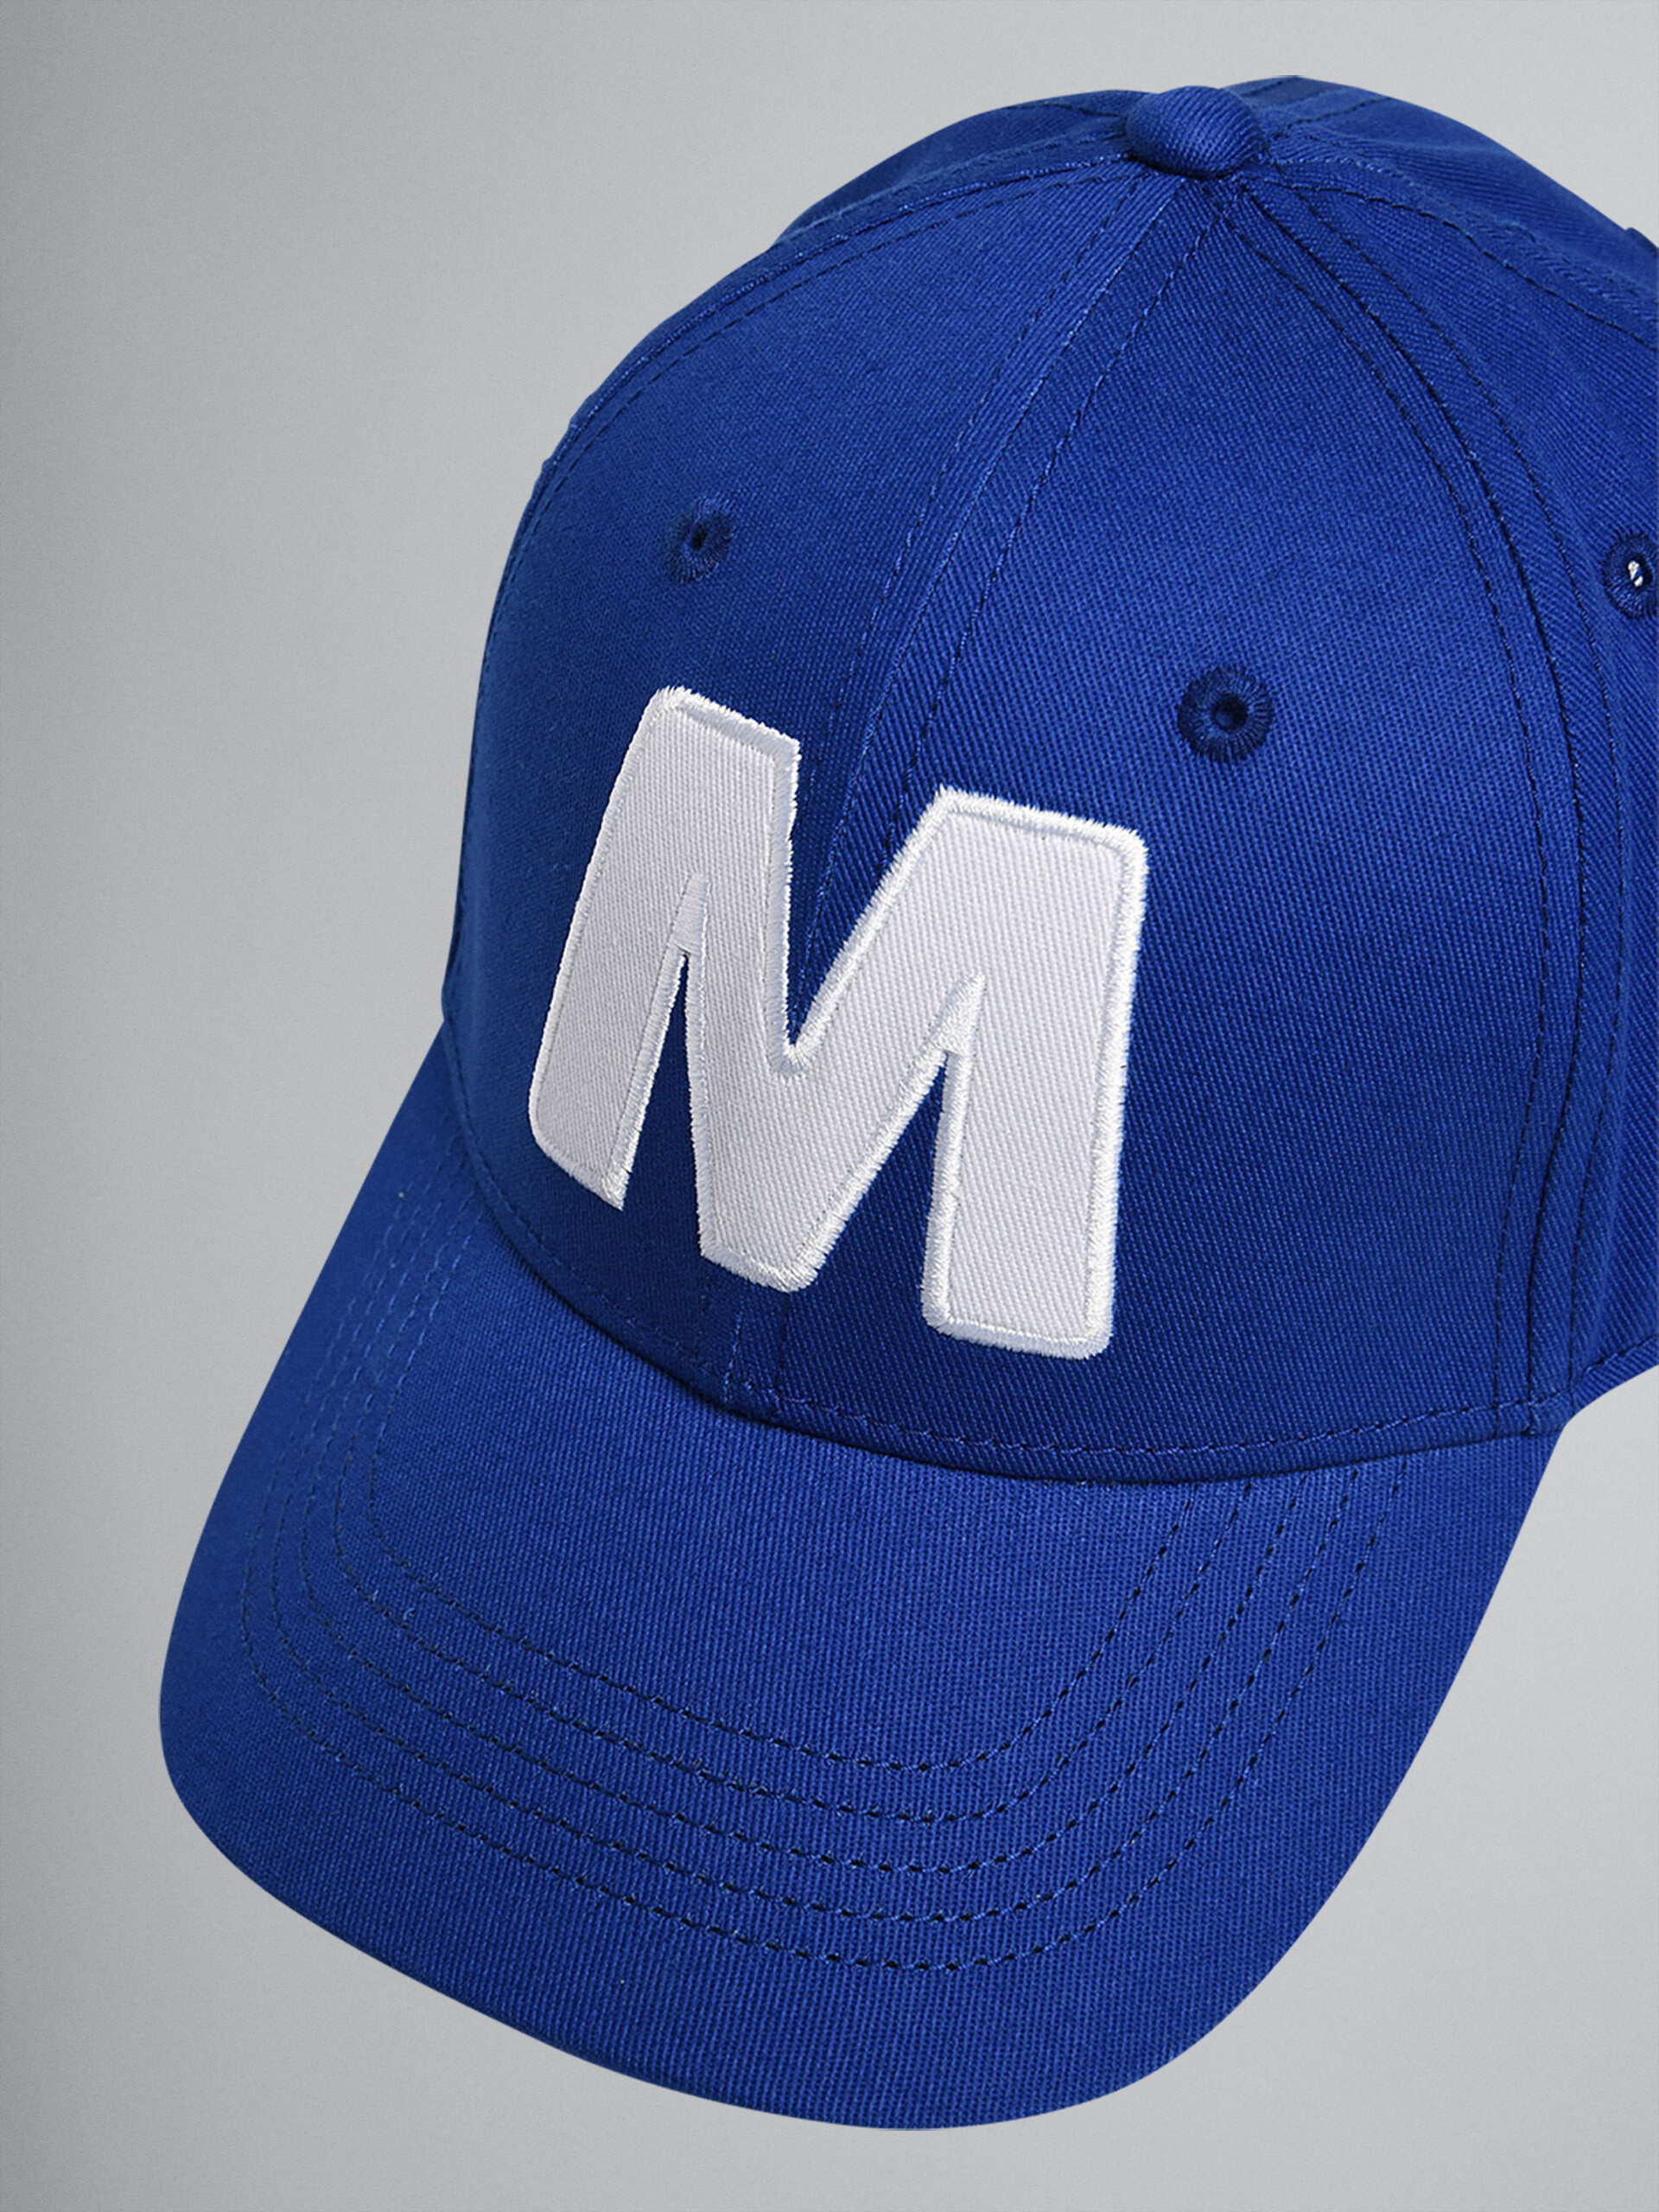 "M" 블루 코튼 개버딘 야구모자 - Caps - Image 3